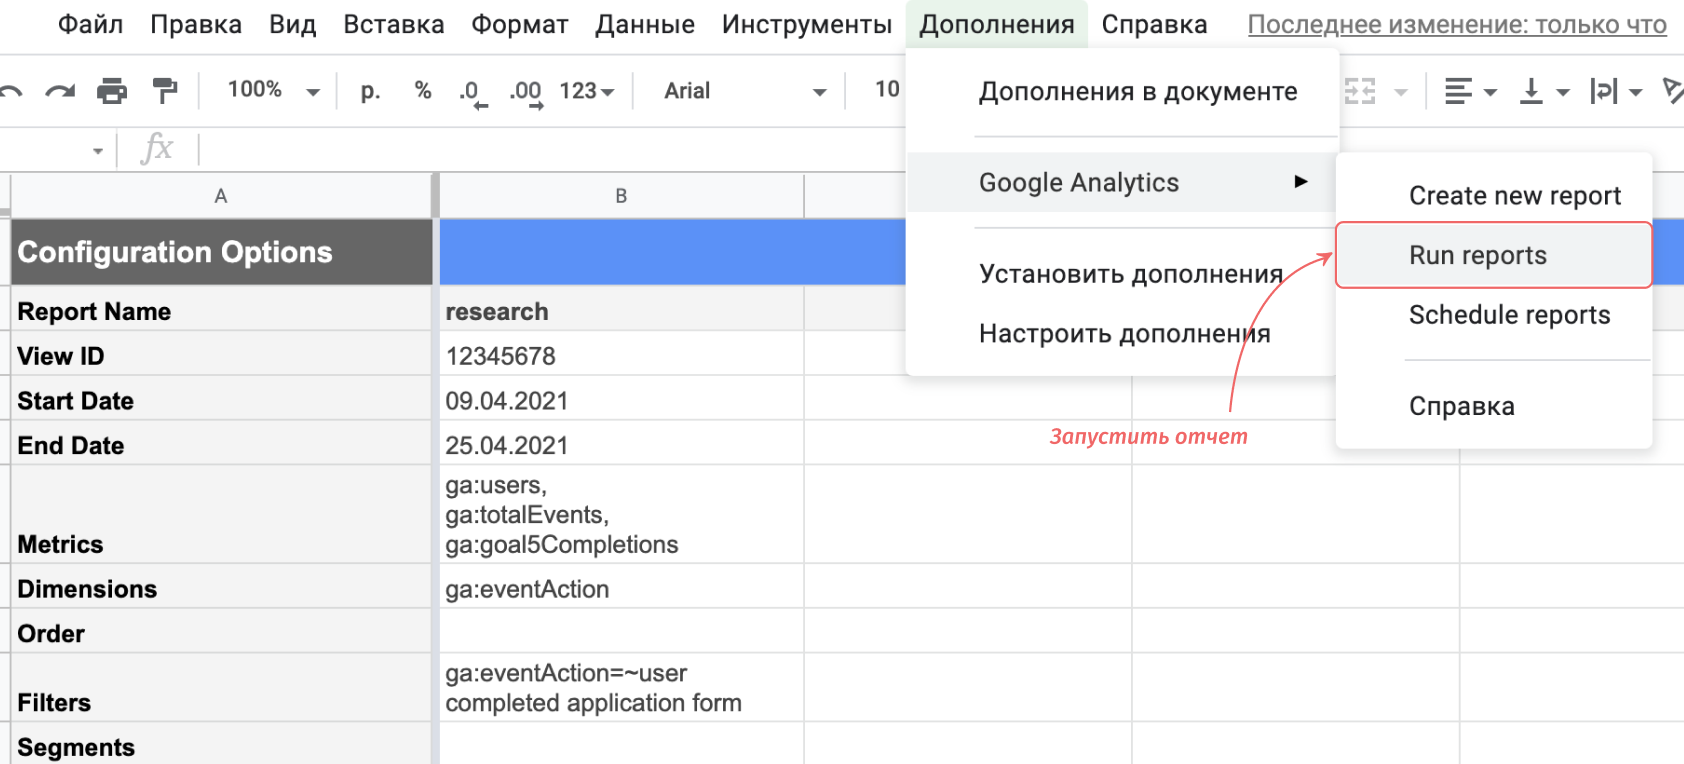 Цели Google Analytics устарели: как быстро проверить расхождения между целями, лидами и заказами, и что использовать вместо целей?